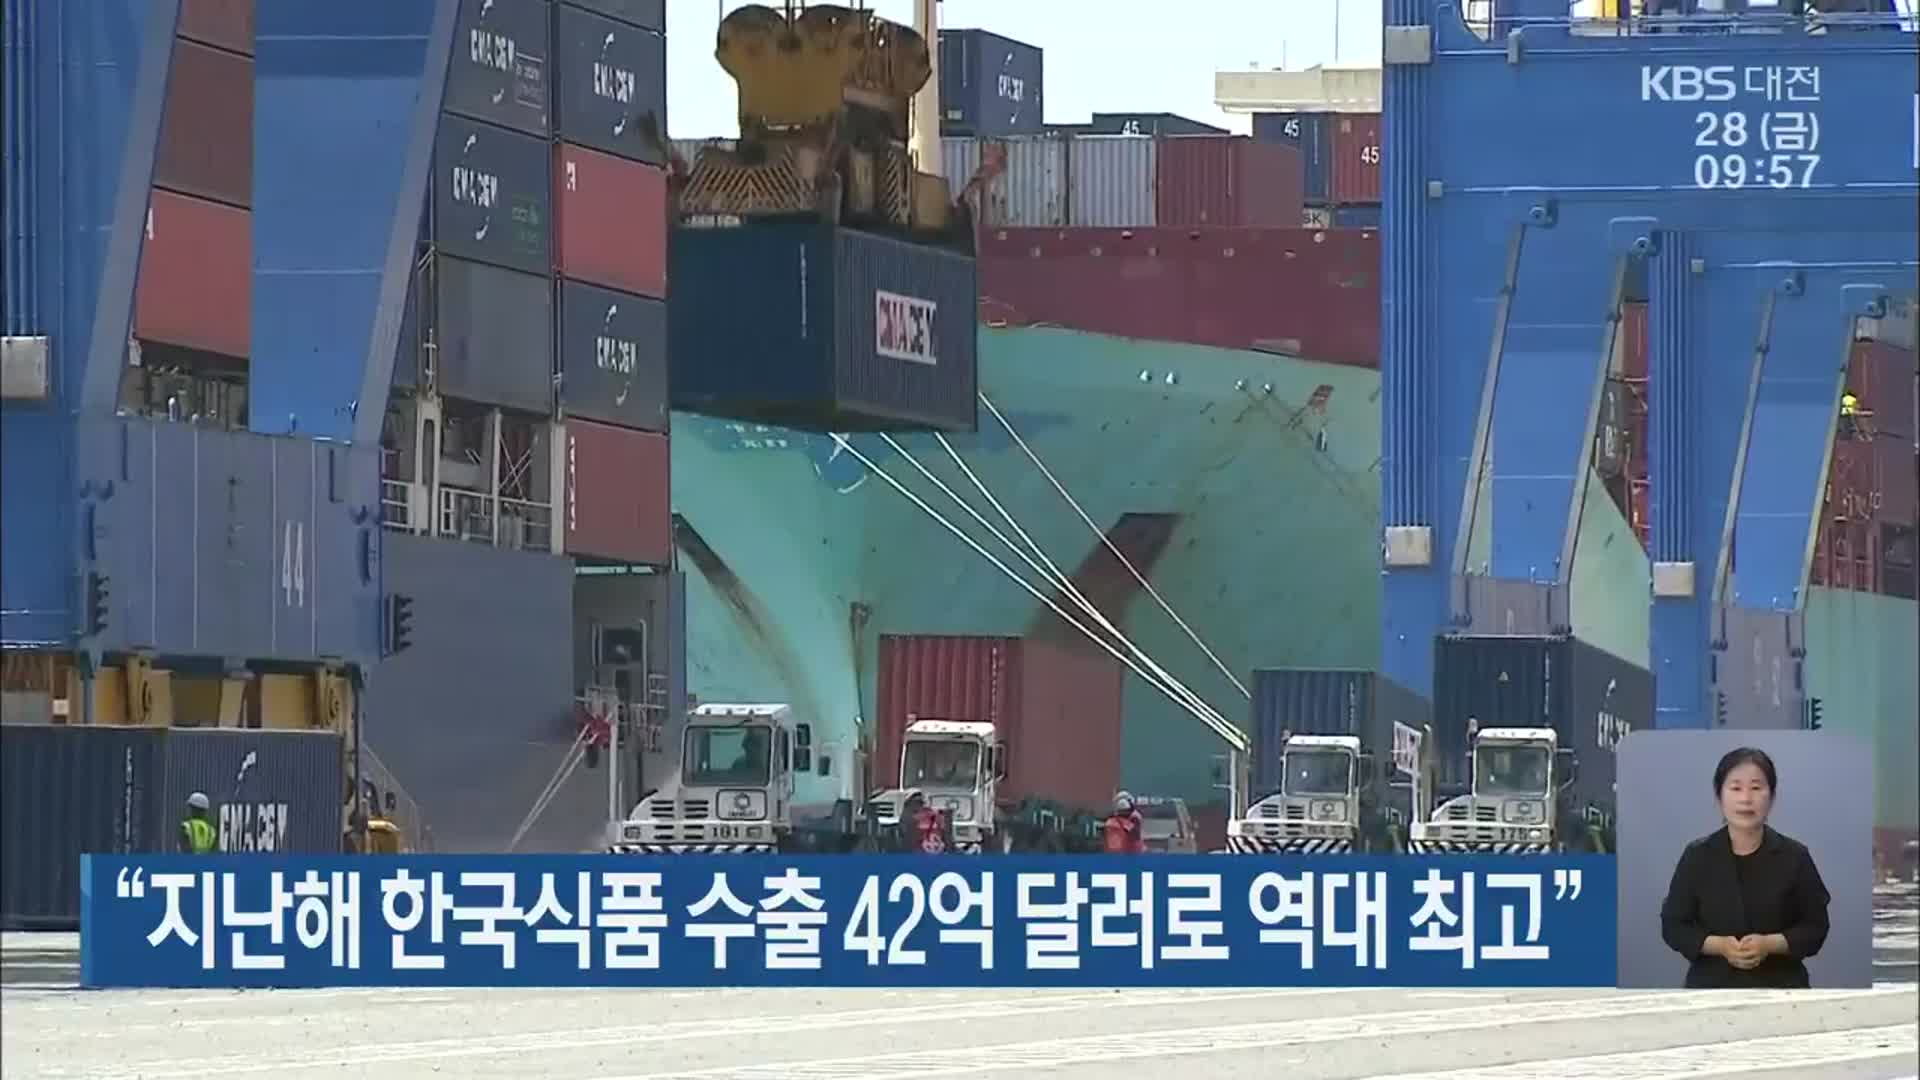 “지난해 한국식품 수출 42억 달러로 역대 최고”